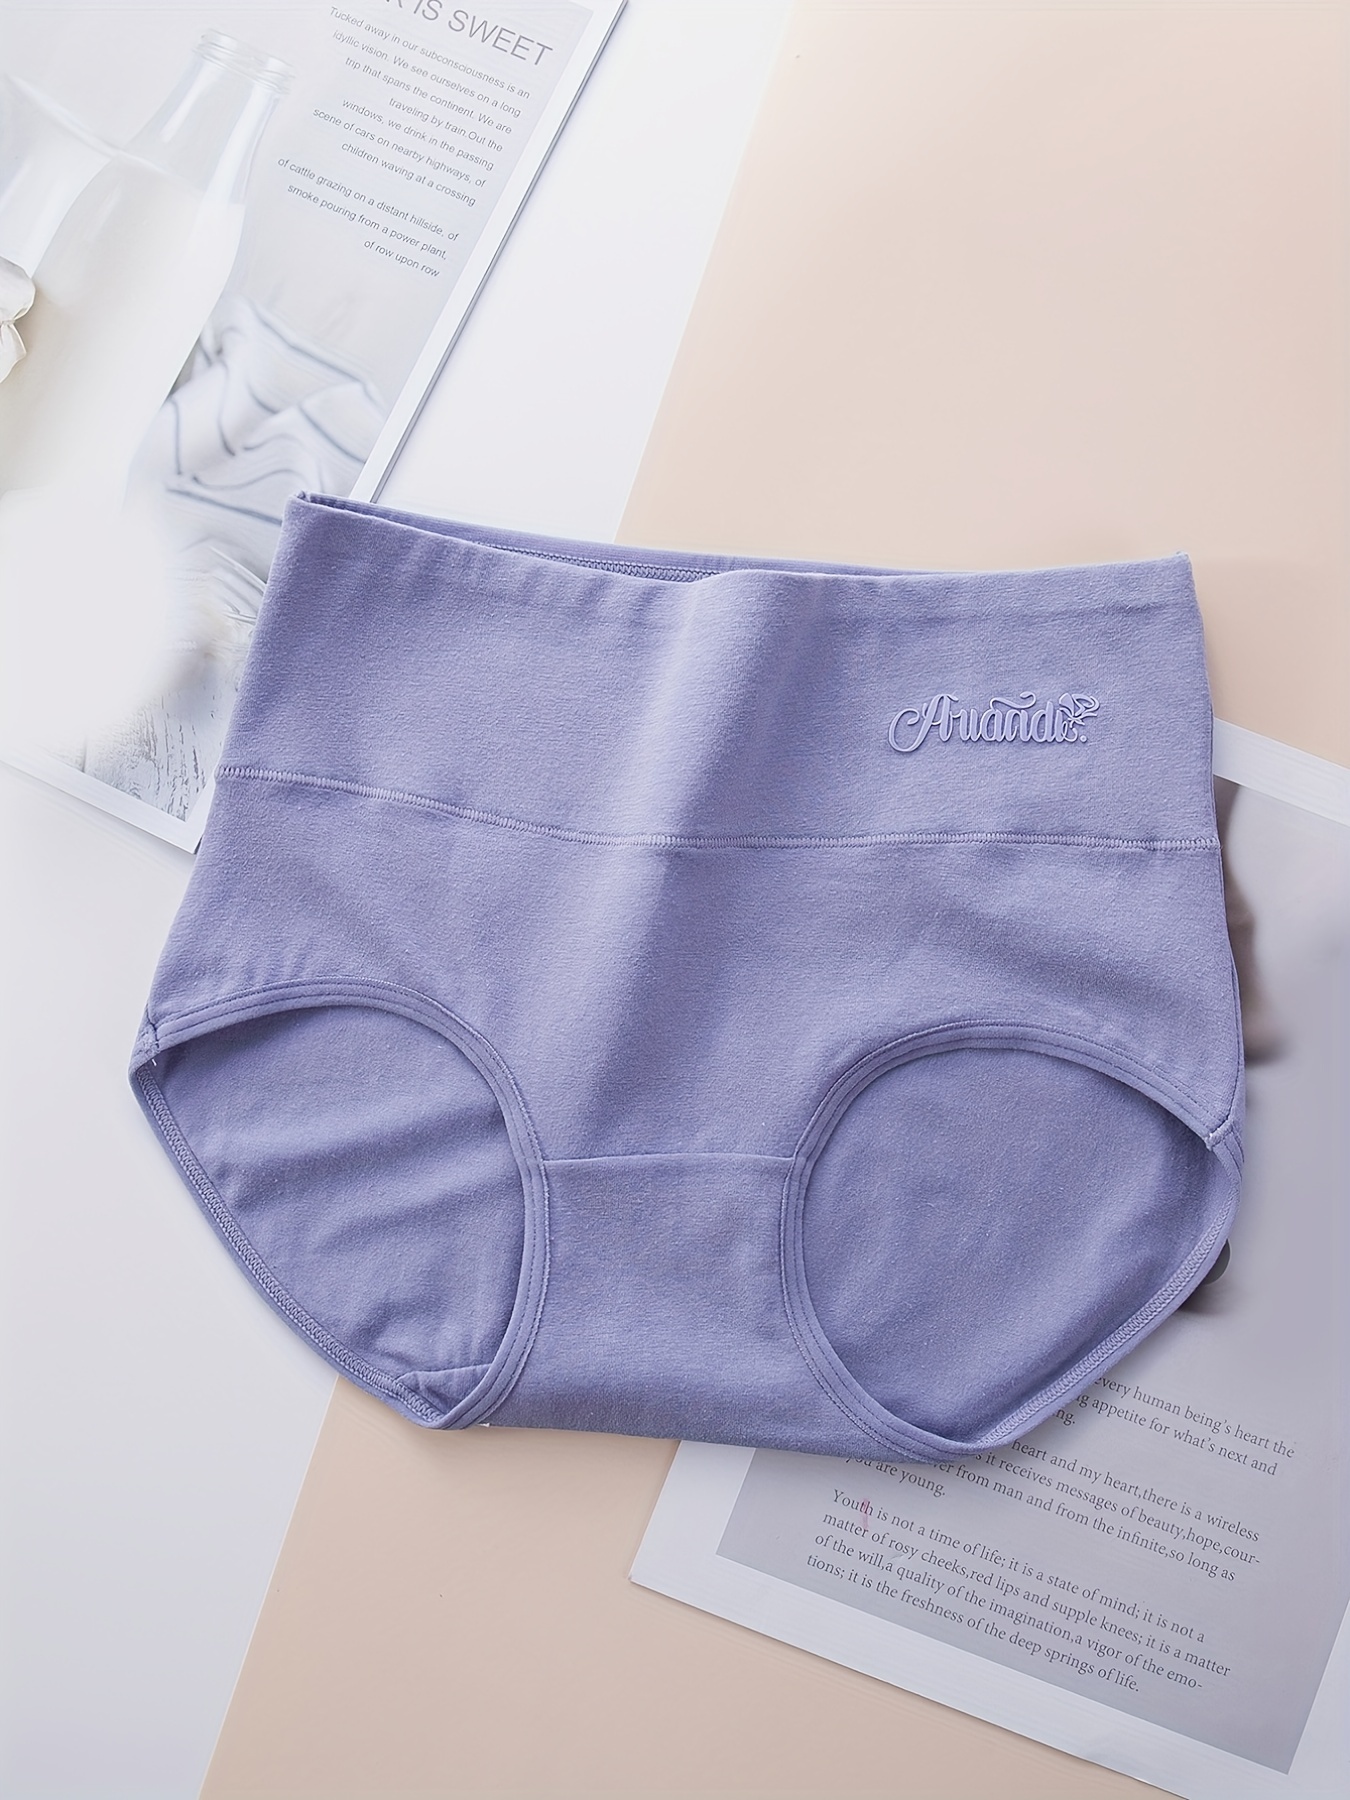 4pcs/lot Lady Briefs Solid Color Thong Panties Cotton Soft